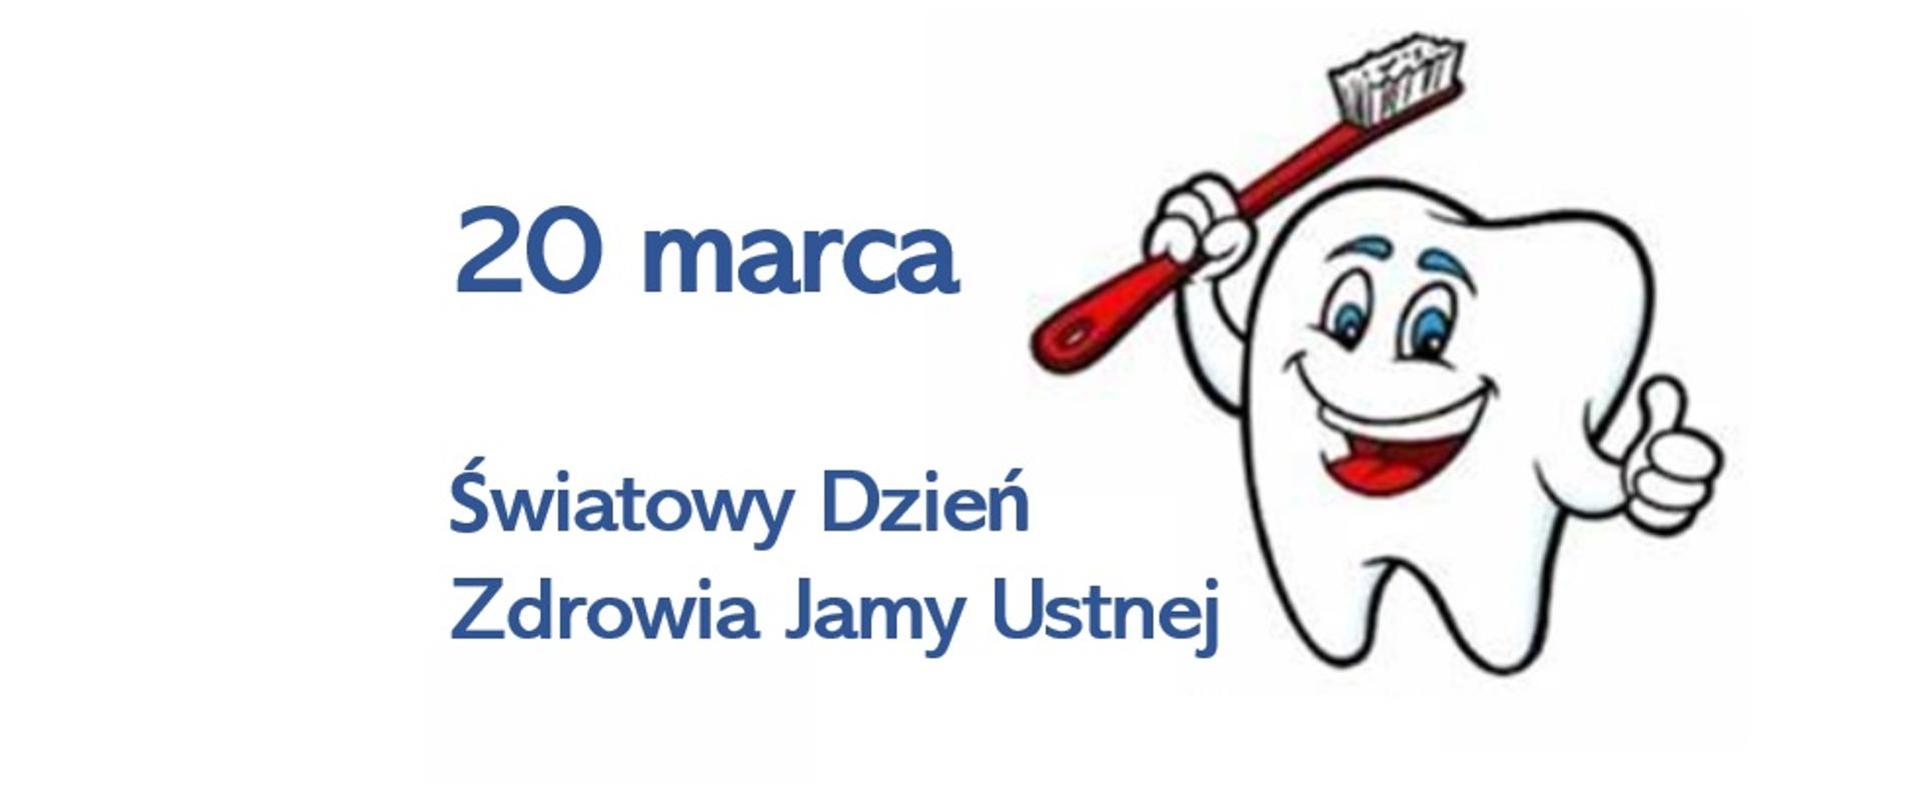 20 marca Światowy Dzień Jamy Ustnej